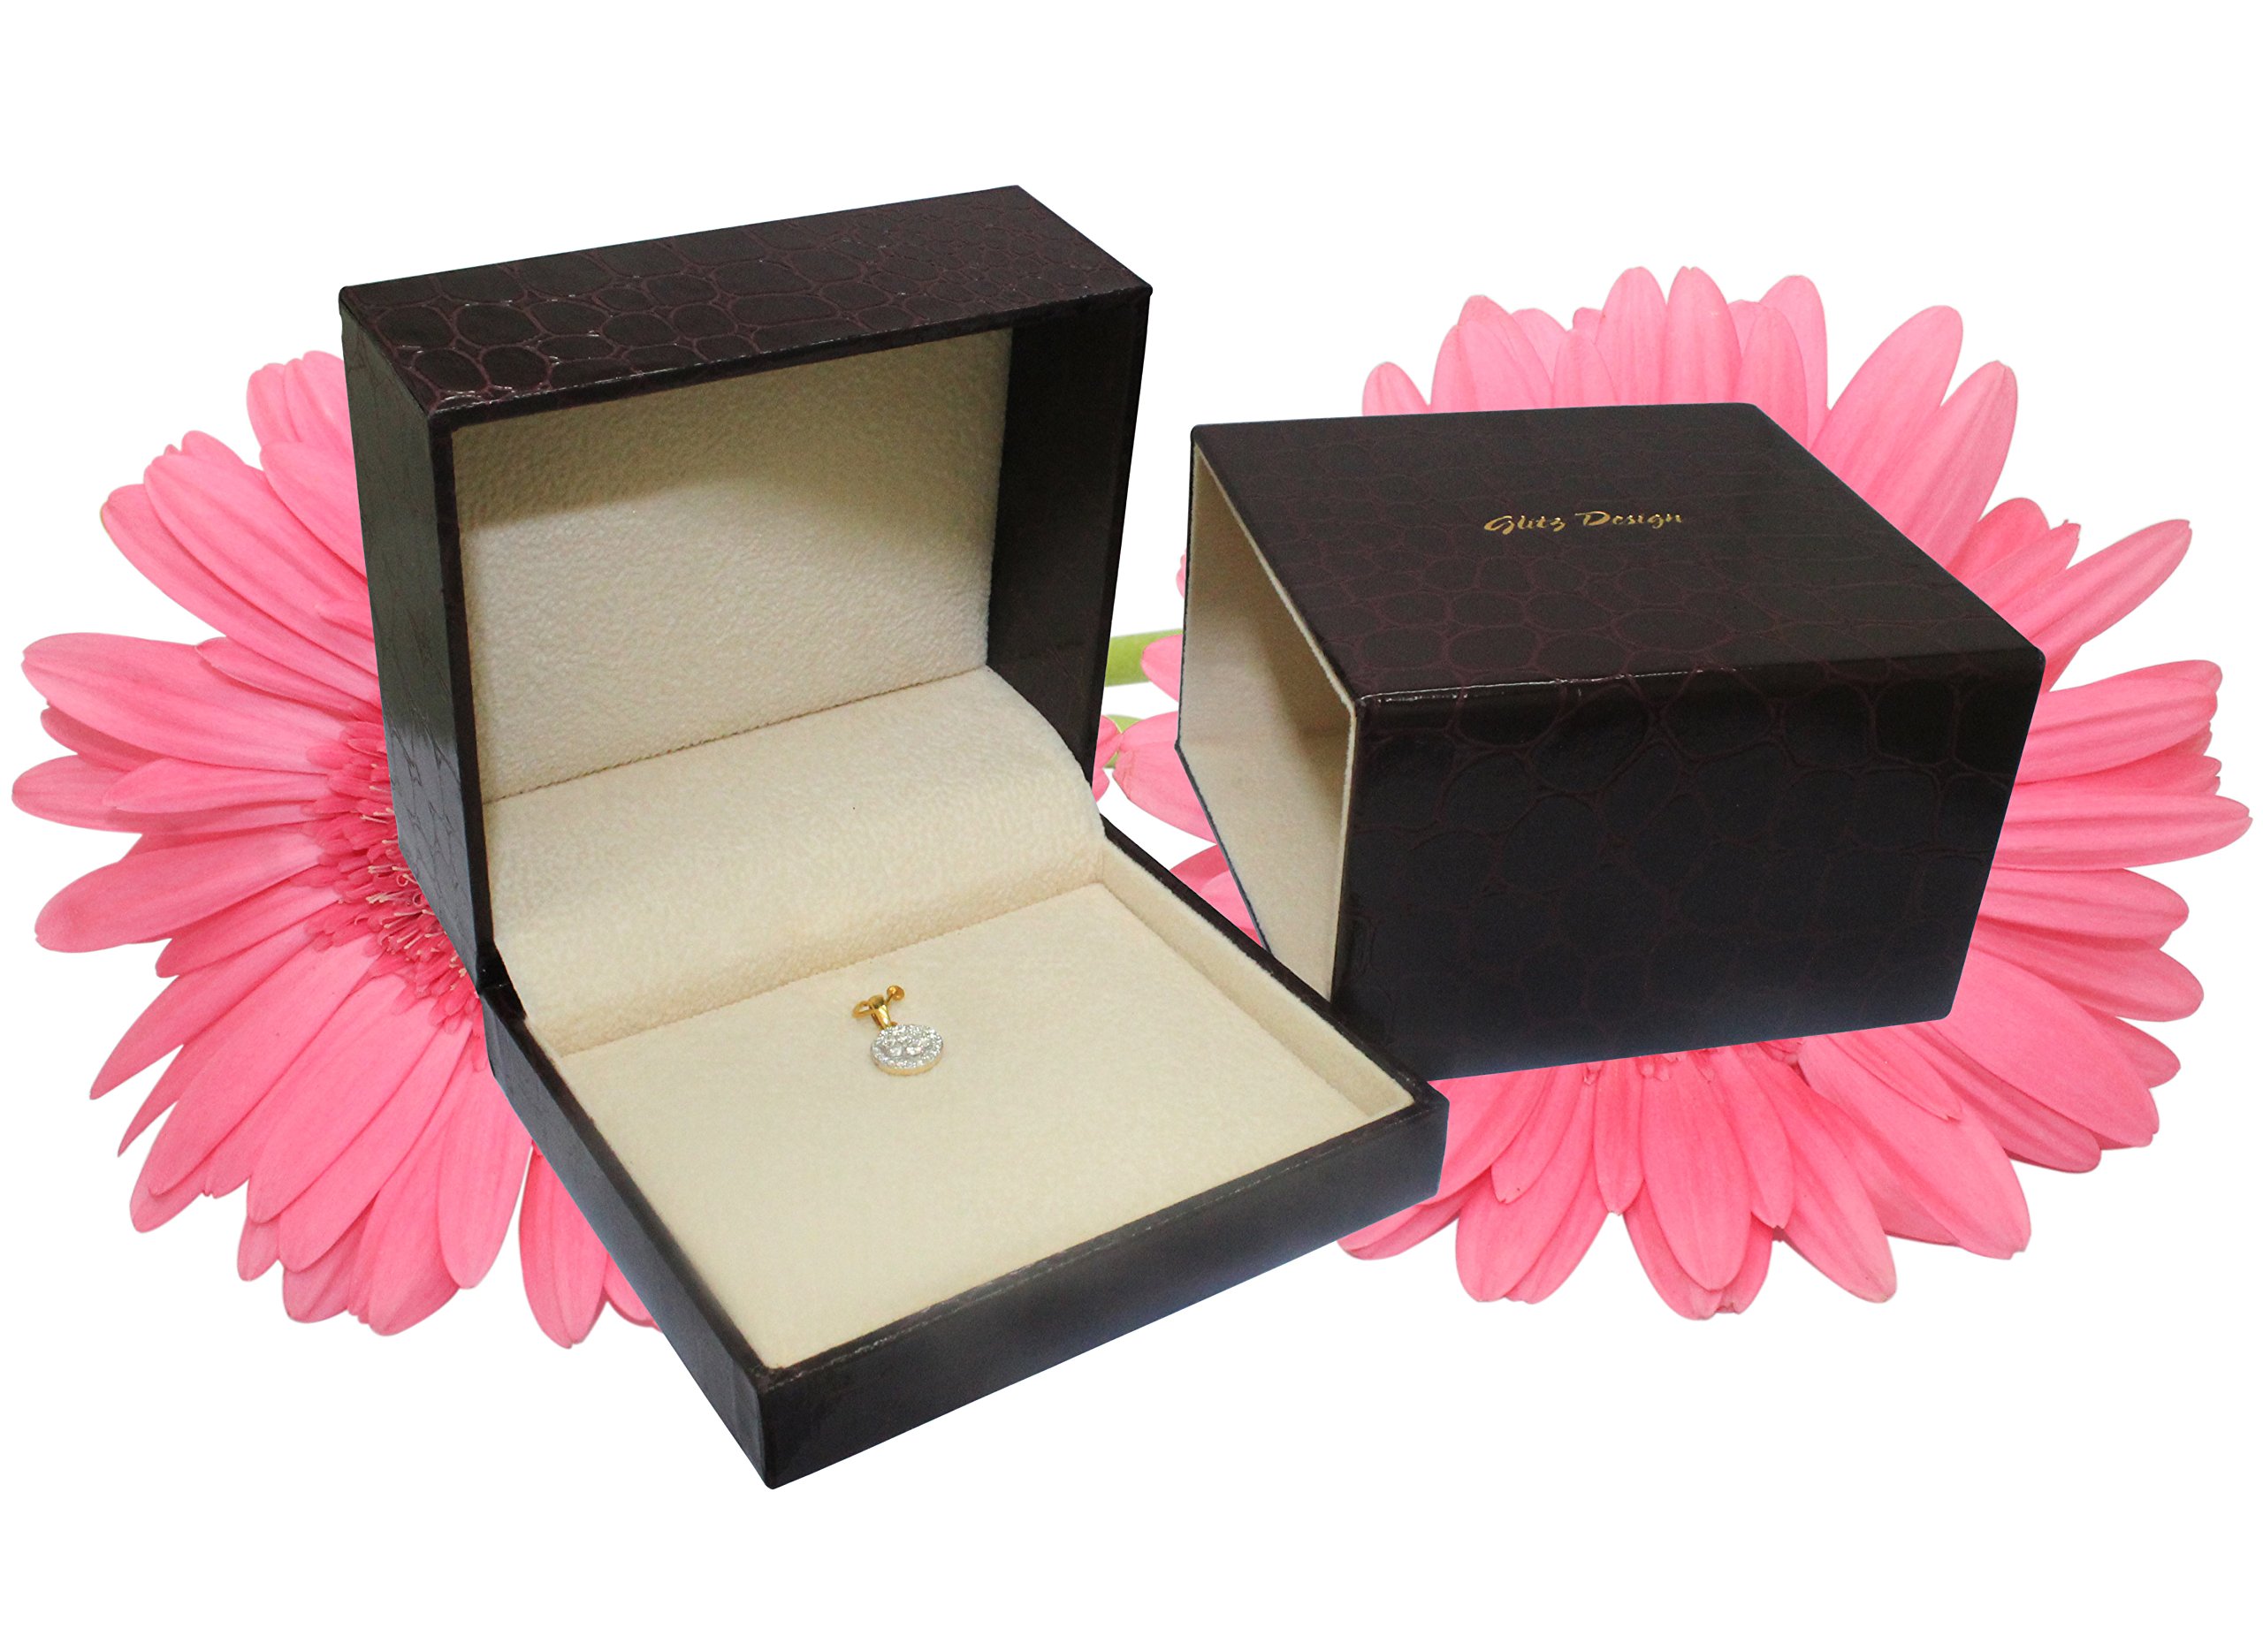 Glitz Design Pear Cut Sapphire Double Halo Diamond Necklace 14K Gold